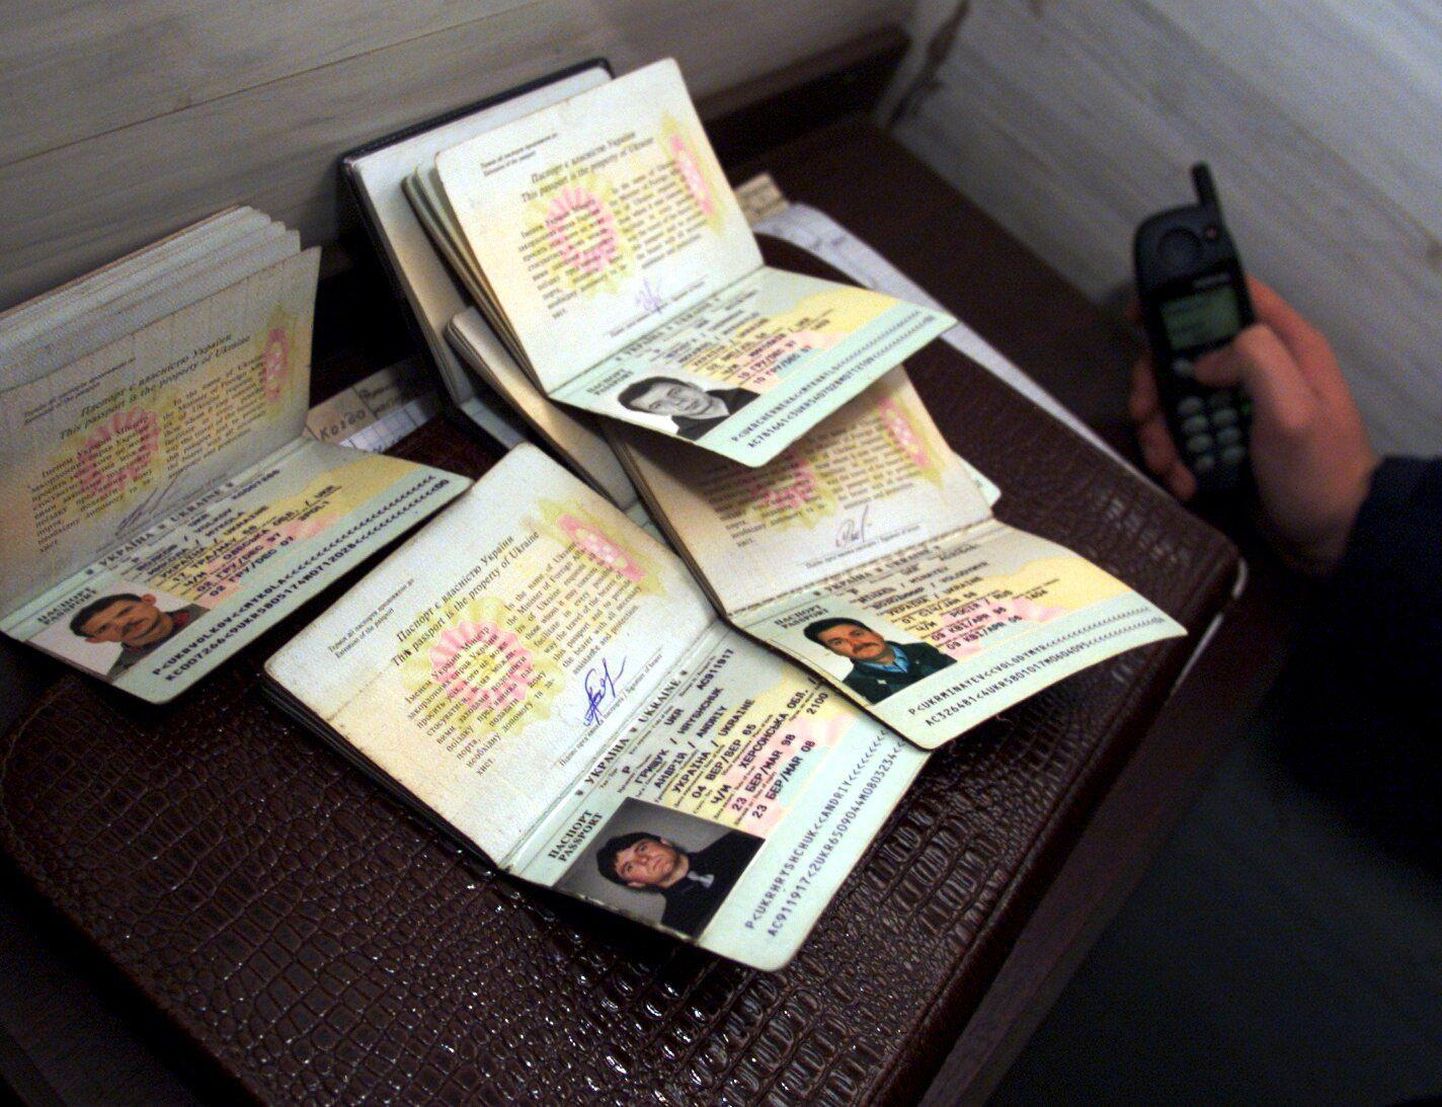 Piirivalvur kontrollimas Ukraina töötajate passe. Foto on illustratiivne. FOTO: Toomas Huik